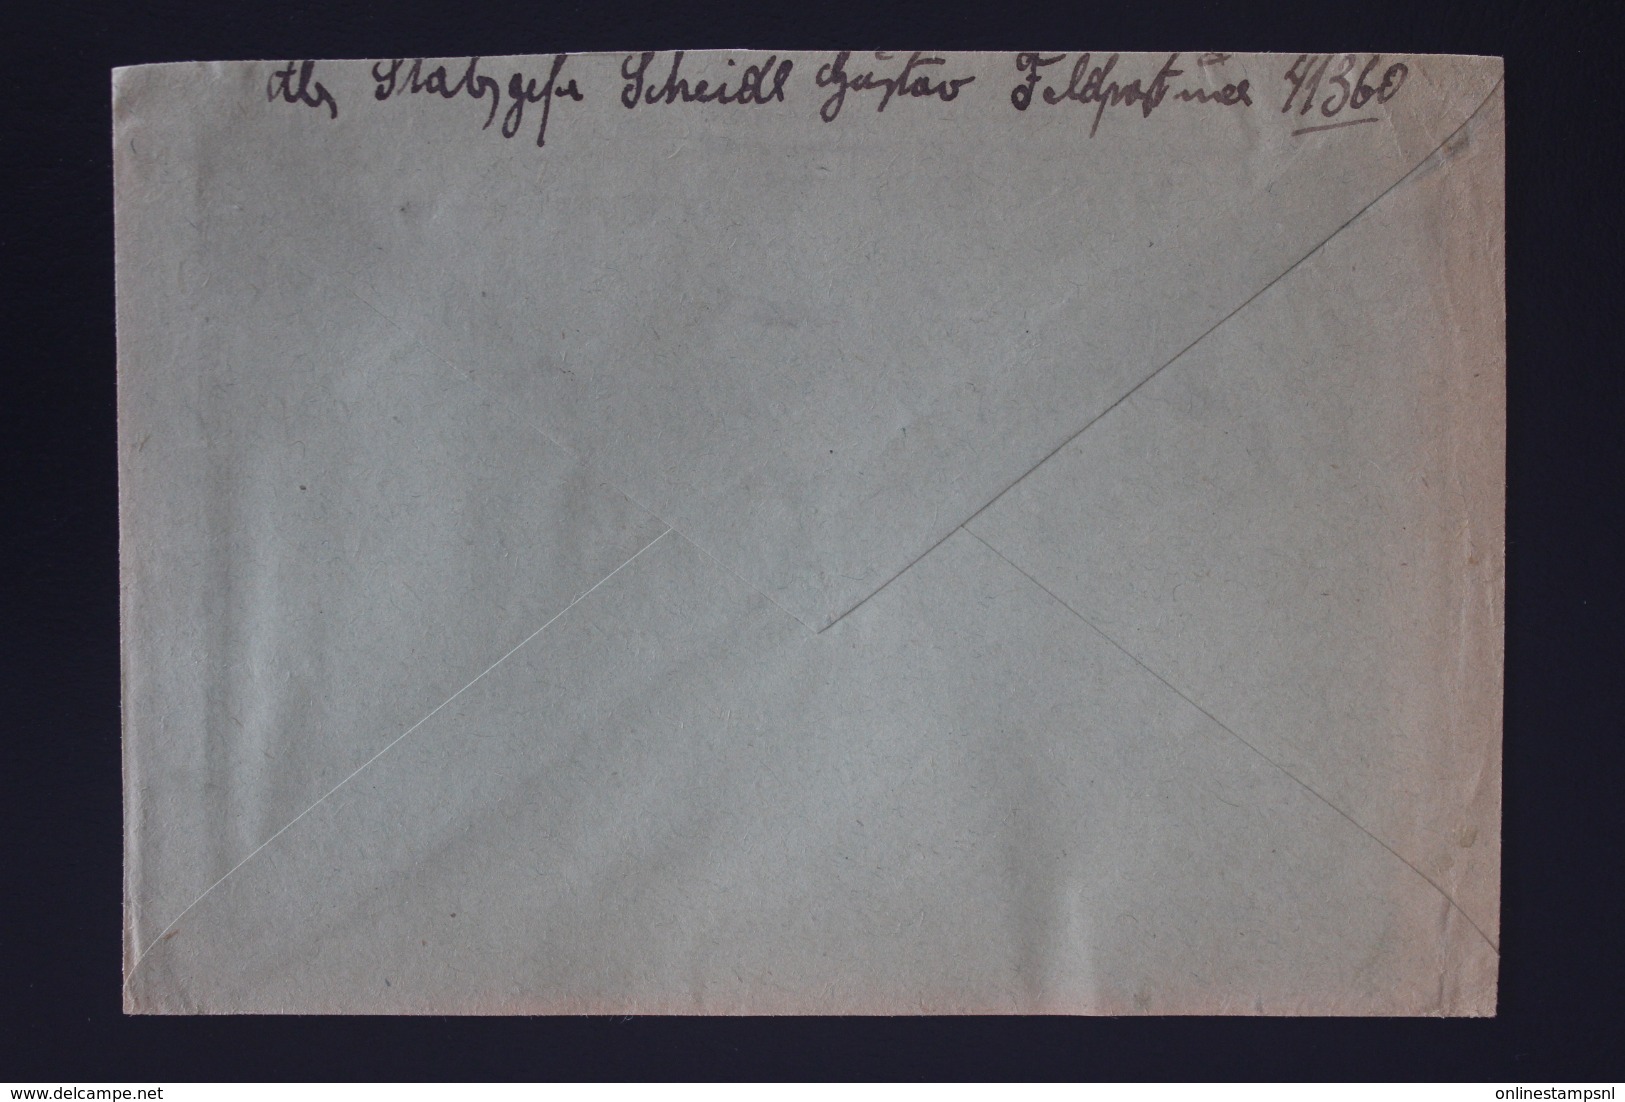 DR Feldpost Brief Mit Inhalt, Leningrad 1942 Mit Detaillierte Festlegung Wiener Neustadt - Briefe U. Dokumente